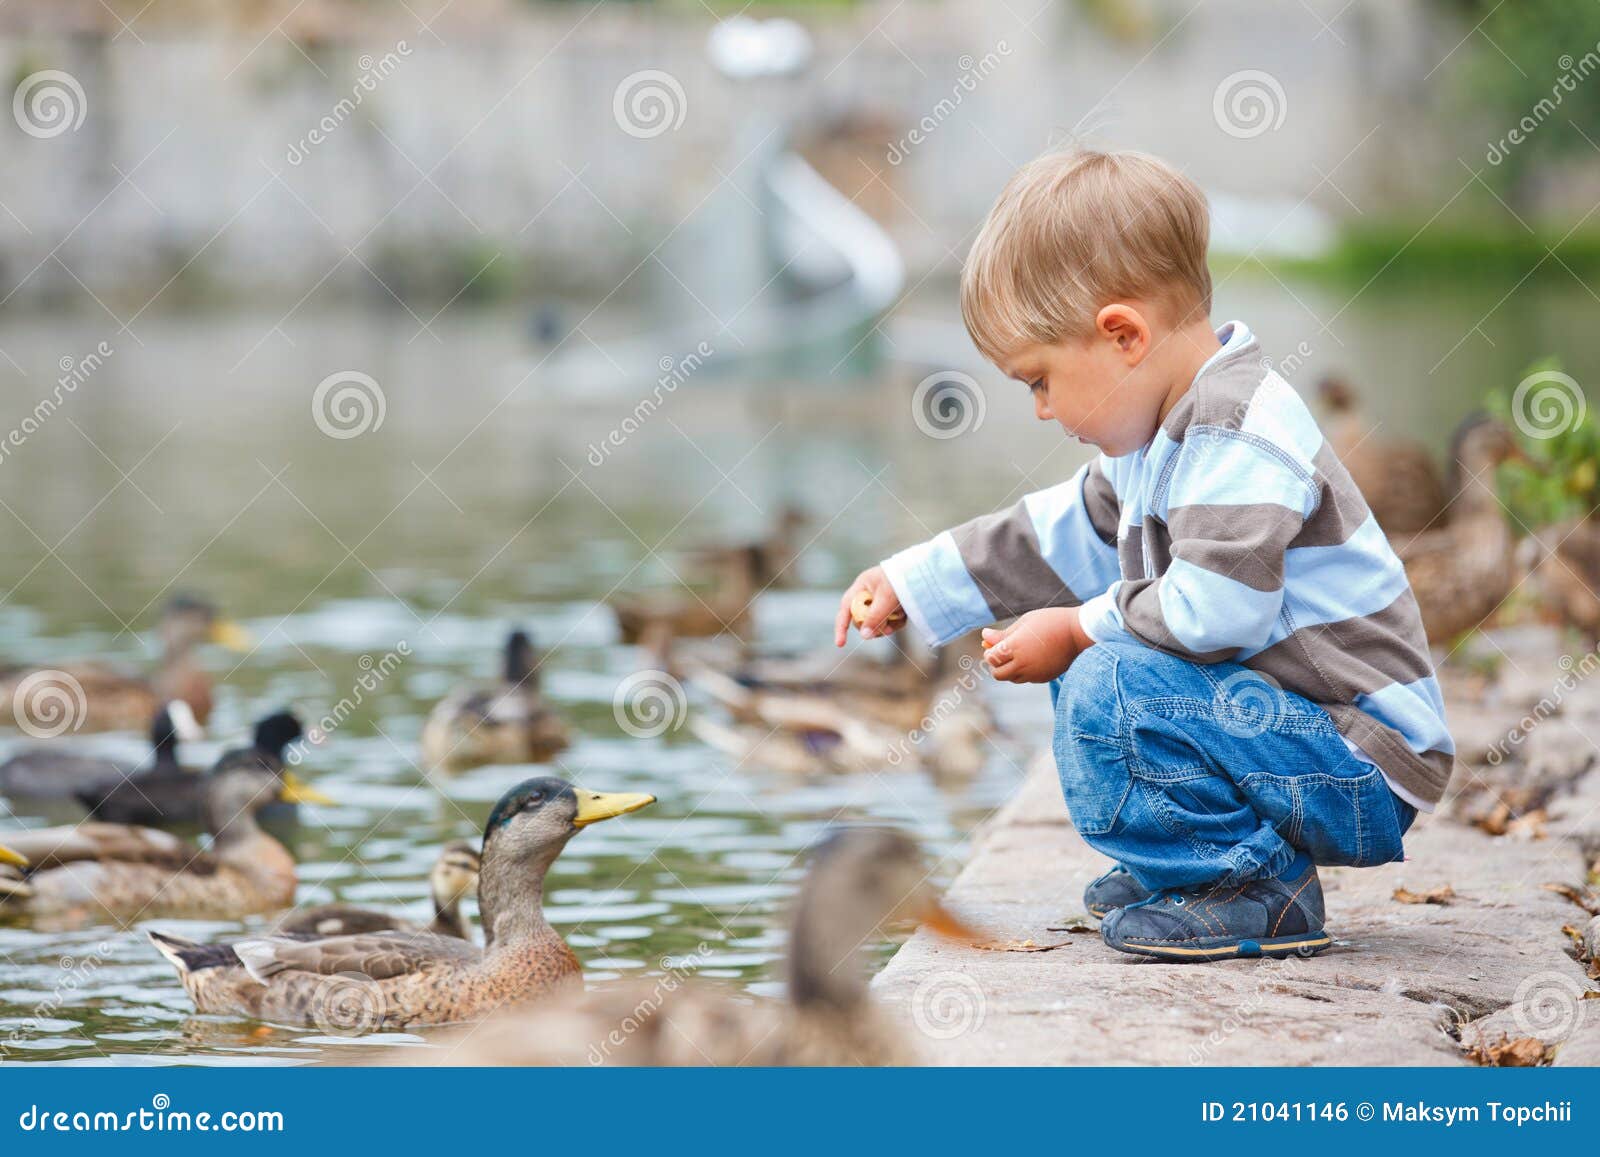 cute little boy feeding ducks